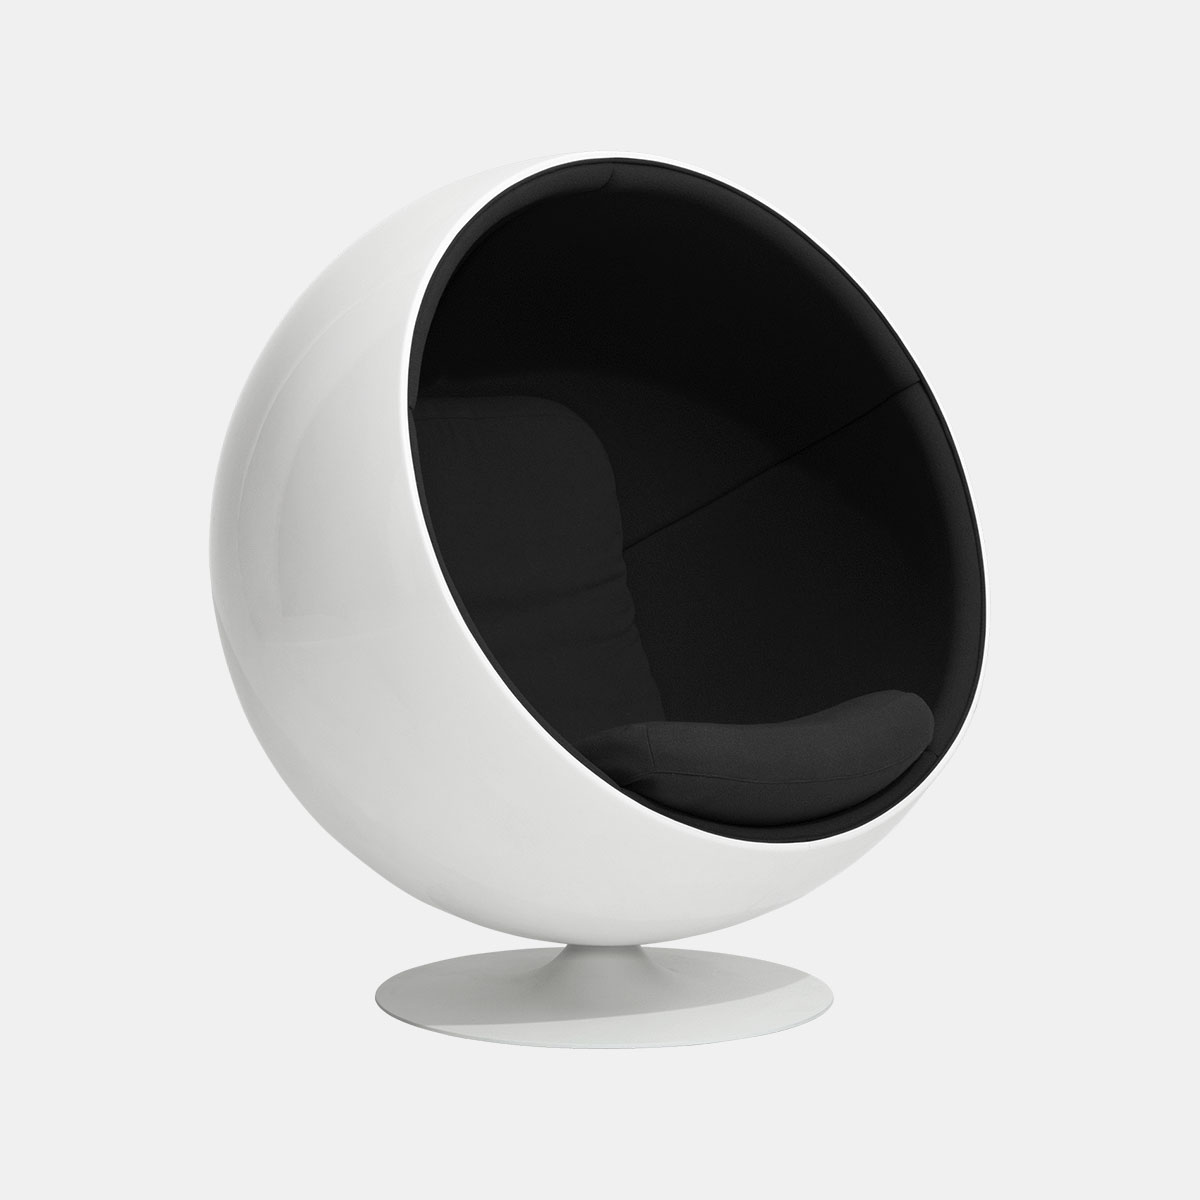 aarnio-originals-eero-aarnio-ball-chair-stof-zwart-001shop